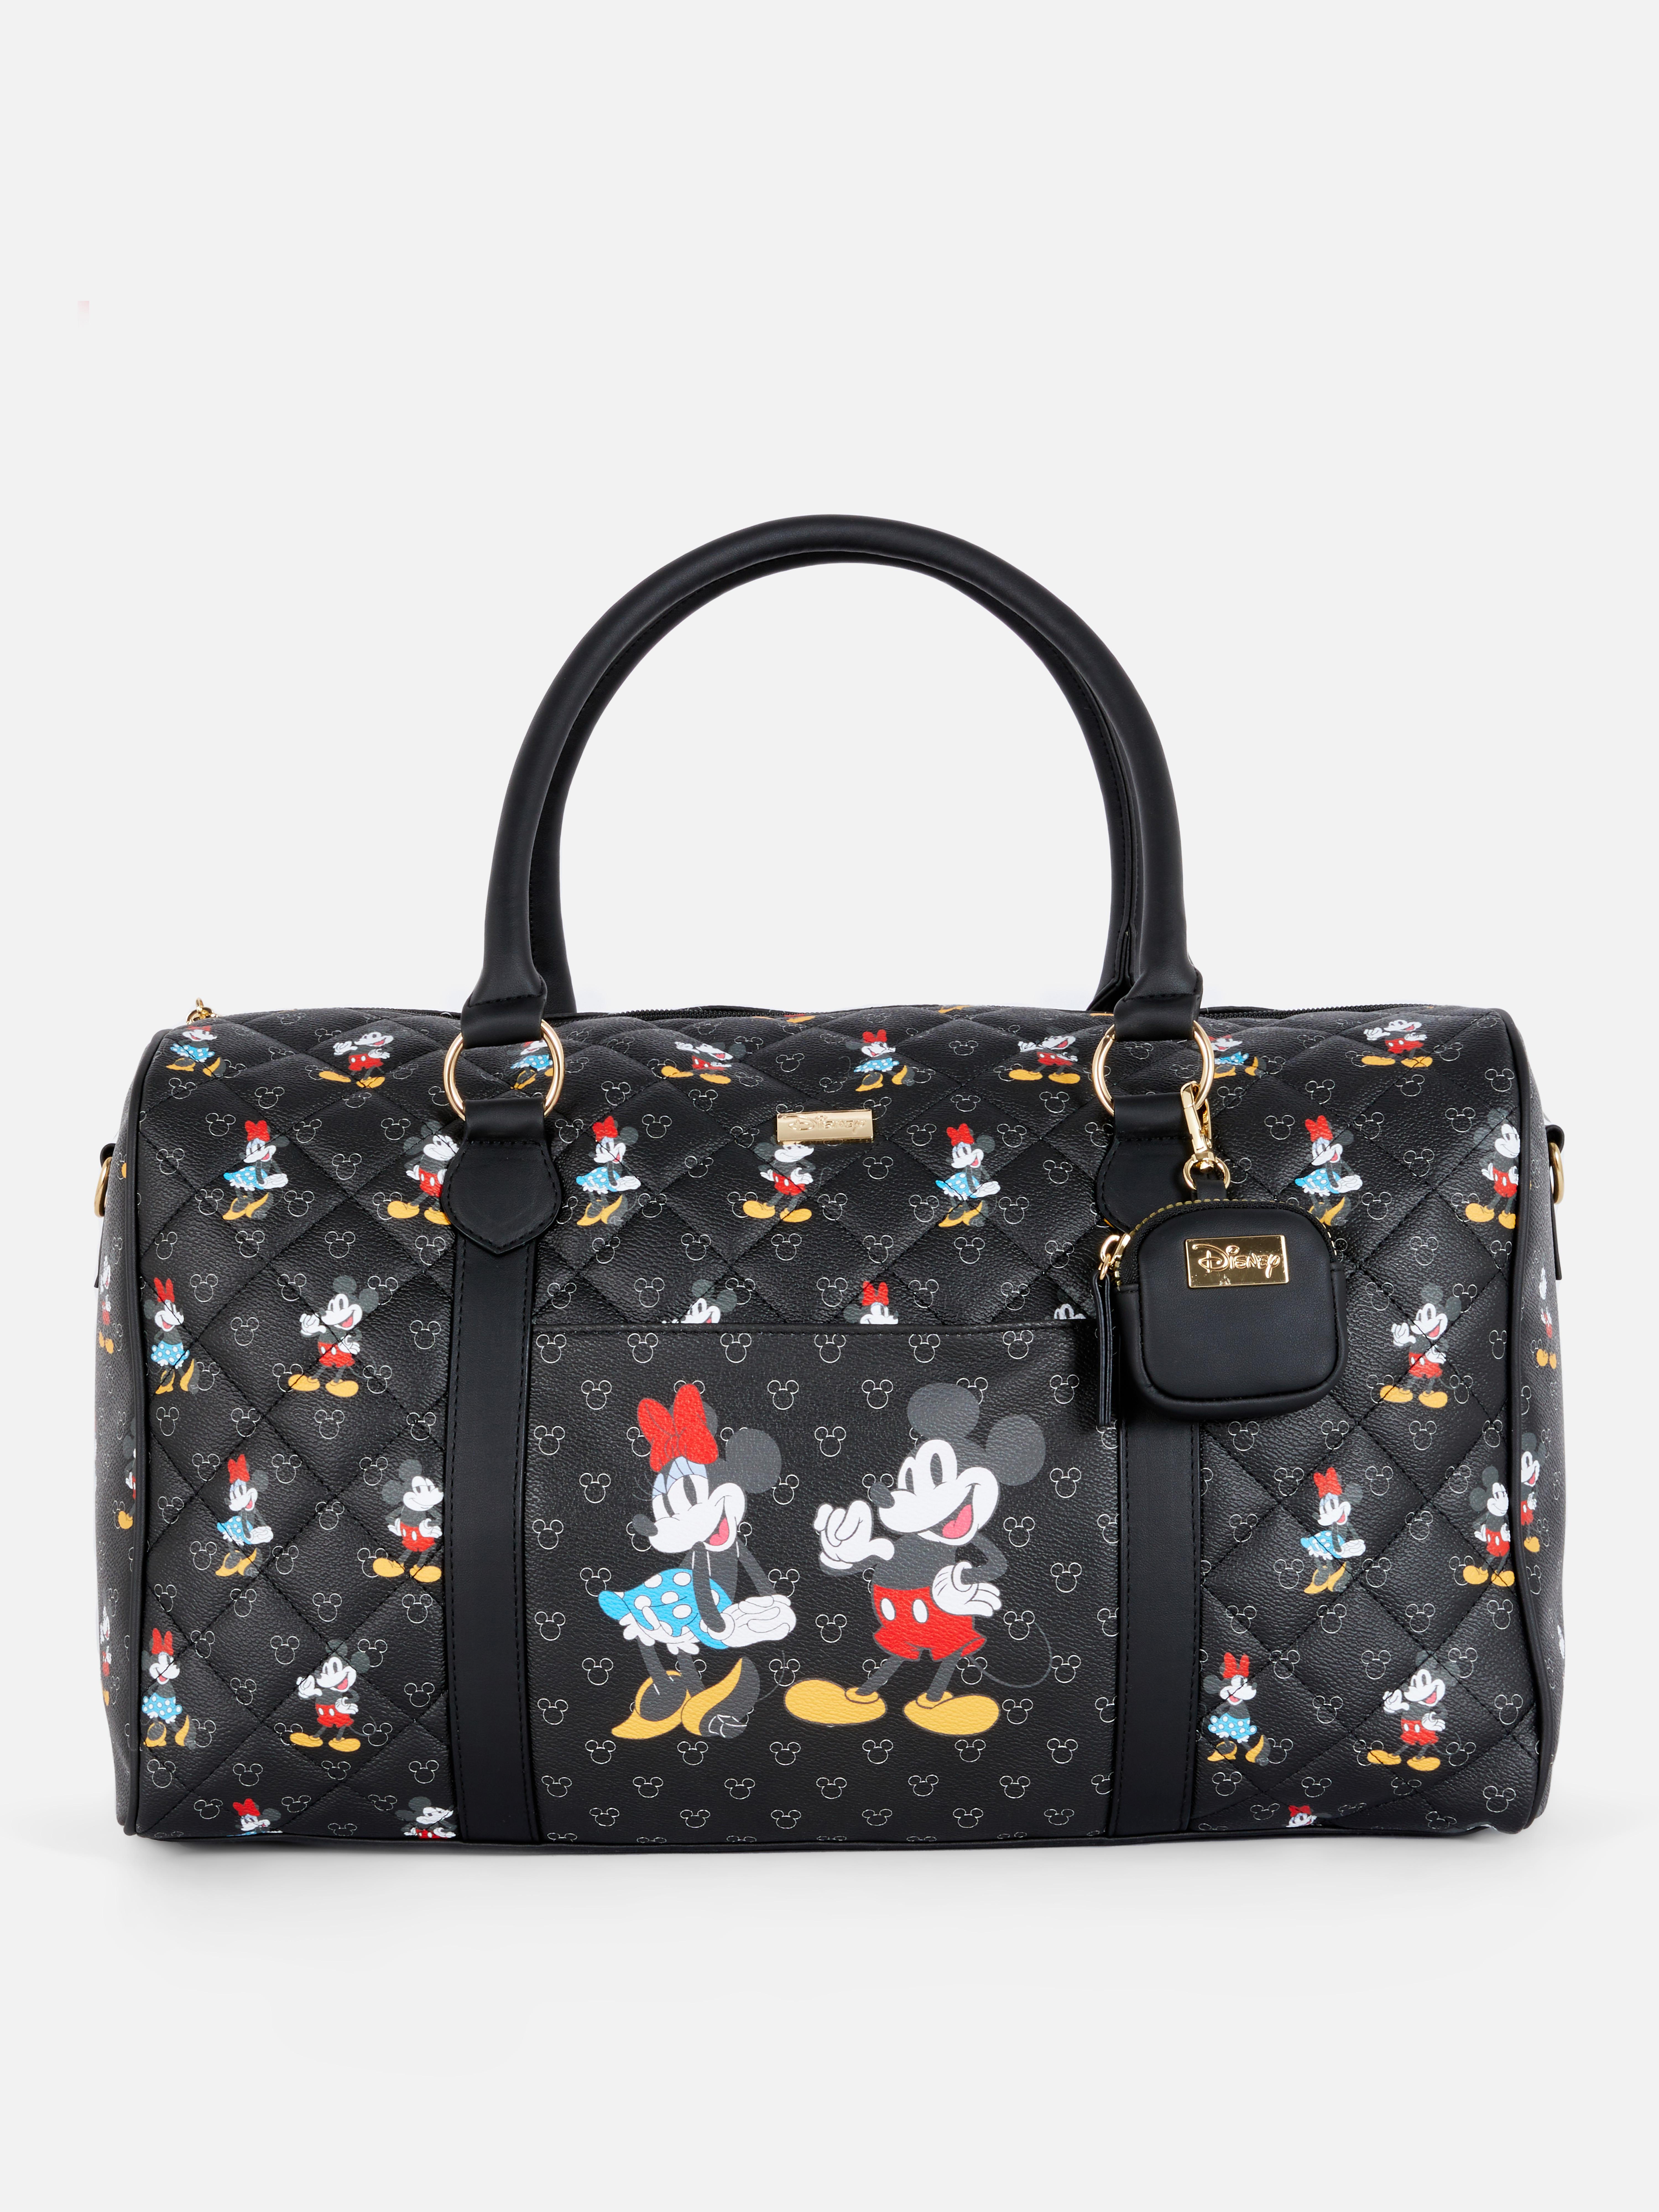 Disney's Mickey & Minnie Mouse Monogram Weekender Bag Black